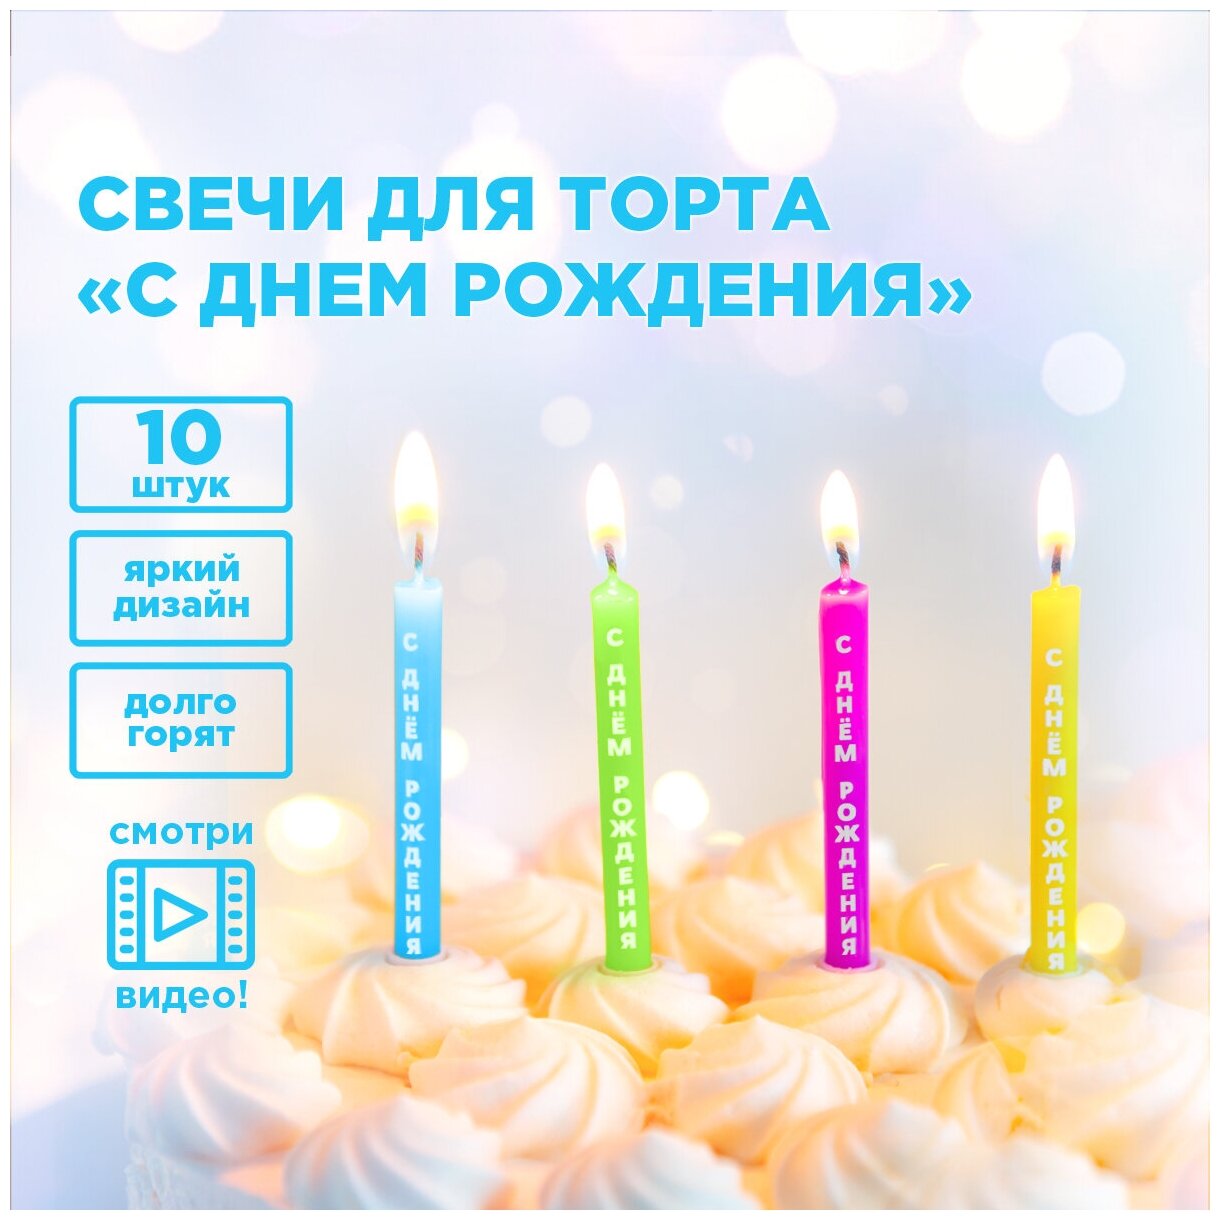 Свечи для торта "С Днем Рождения!", 10 шт. в упаковке PATERRA